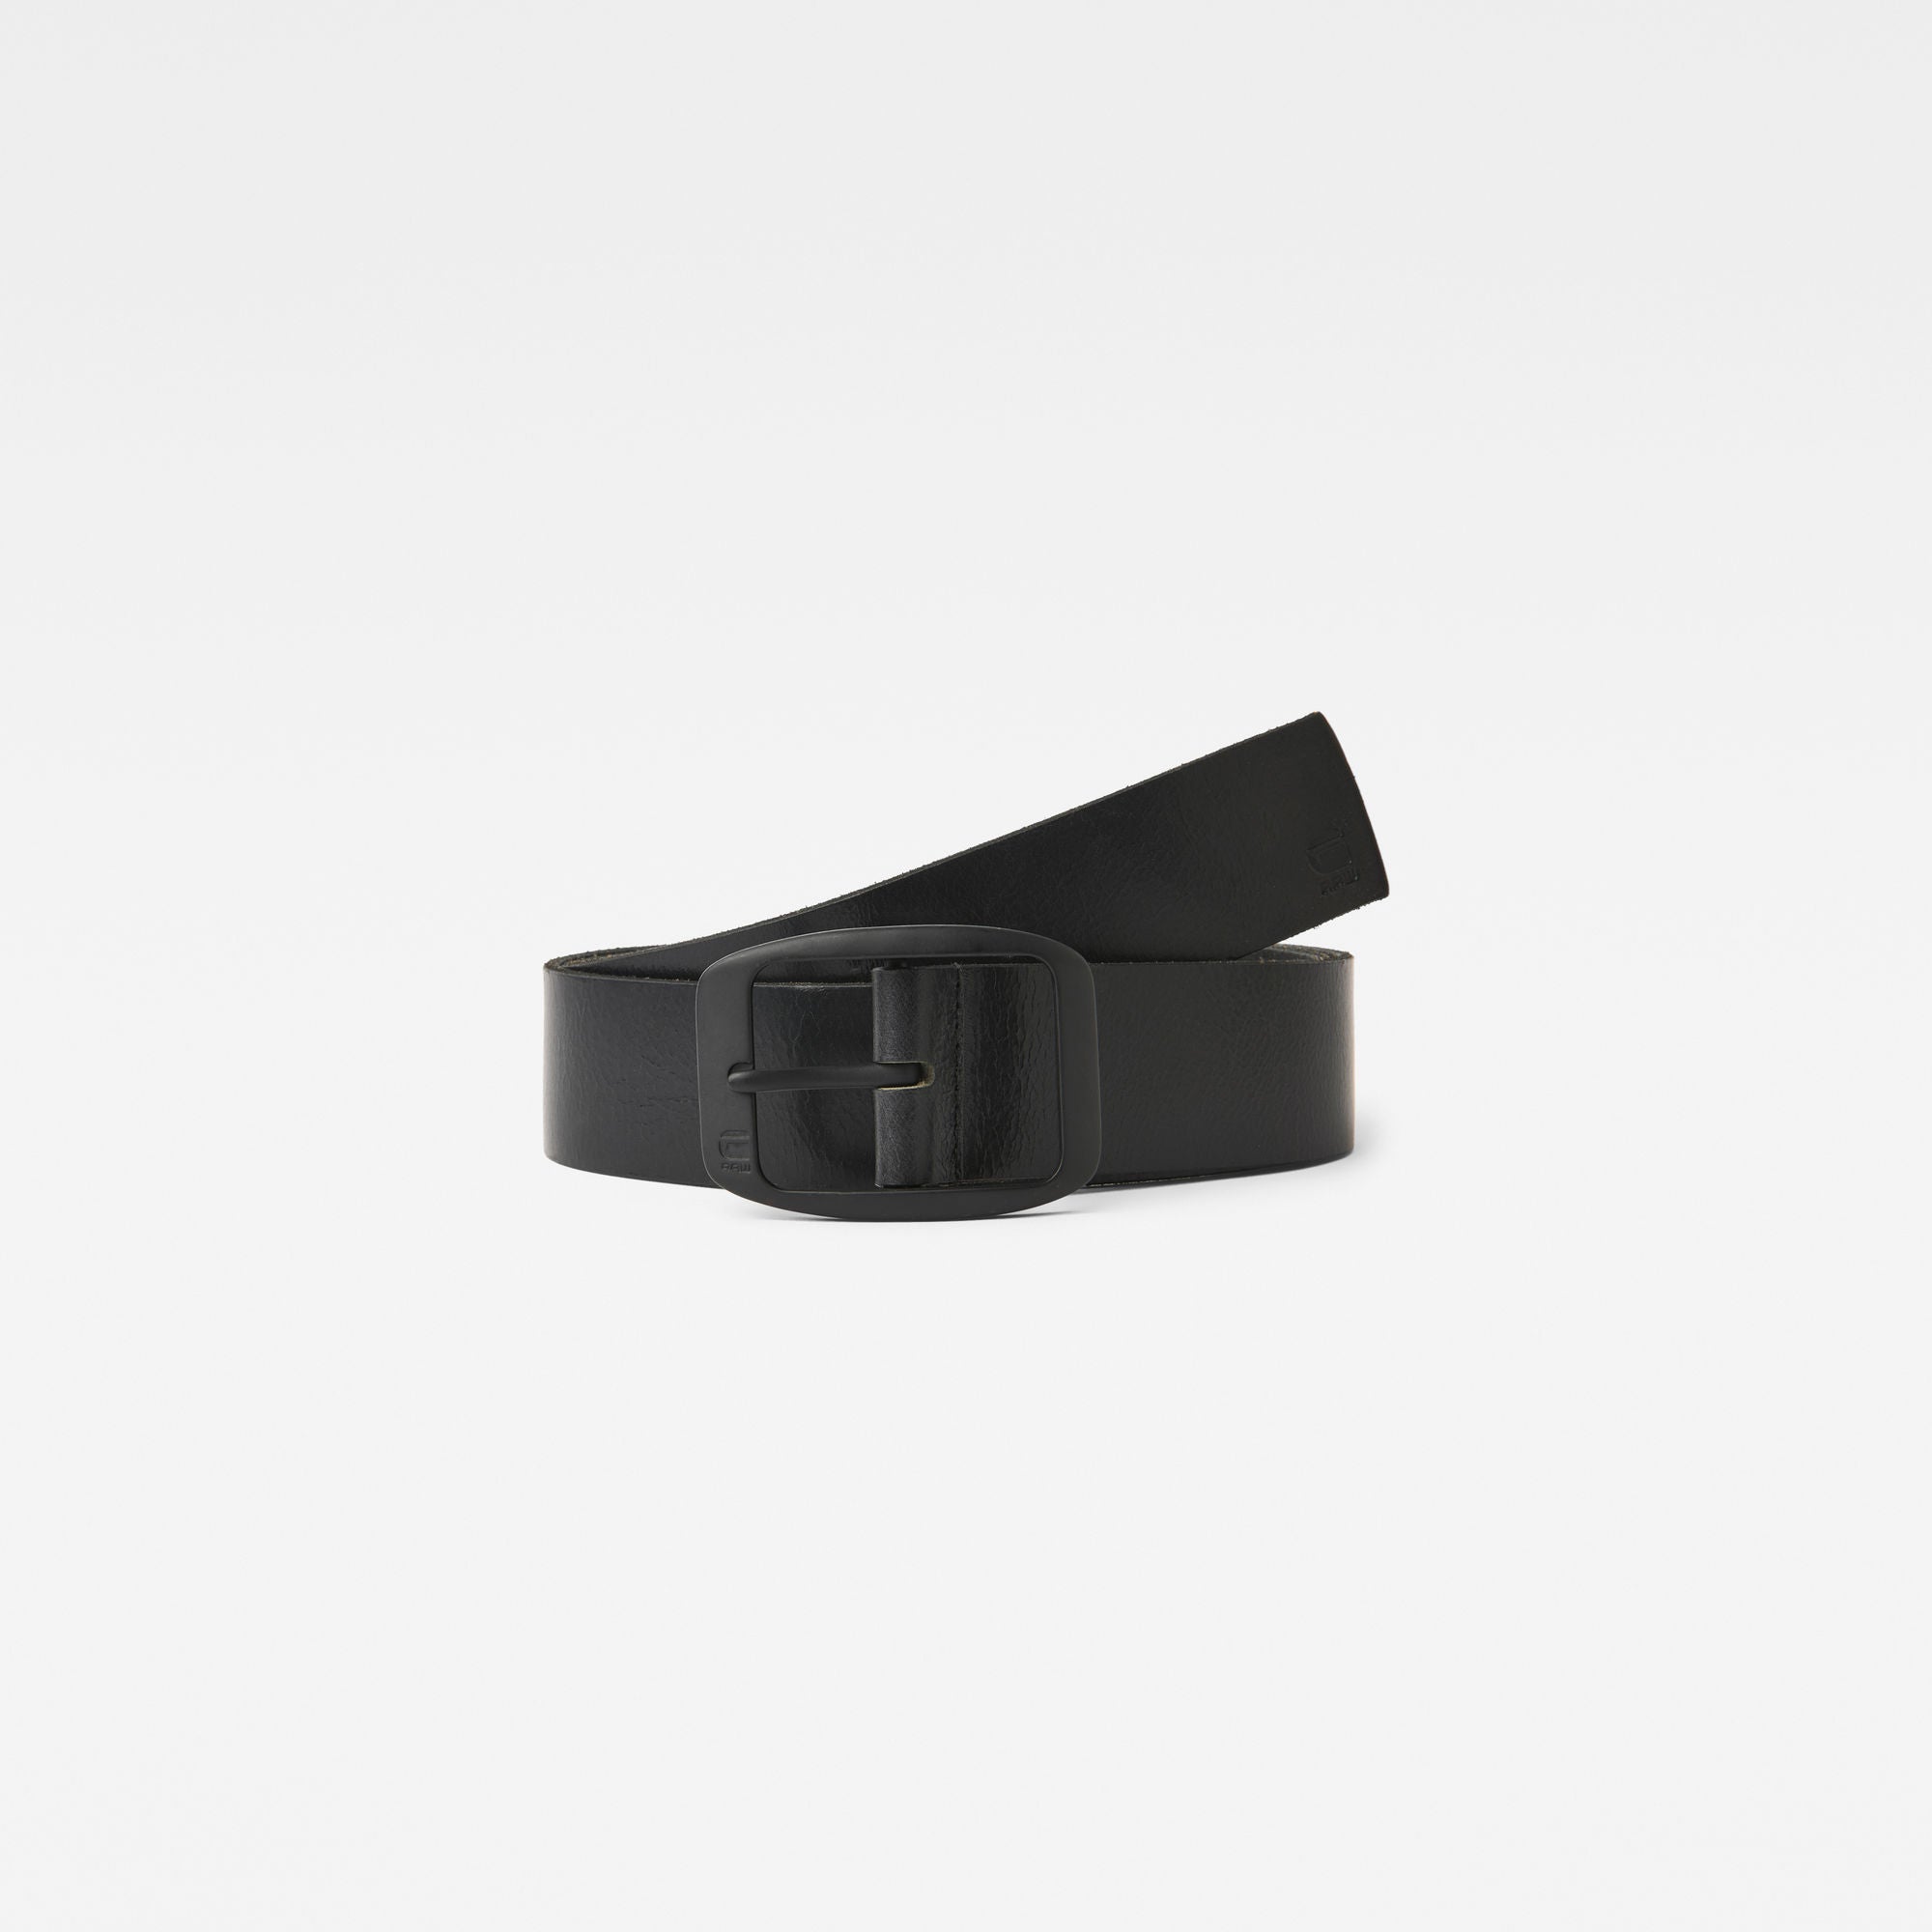 G-Star men’s belt ladd black/black cuba leather